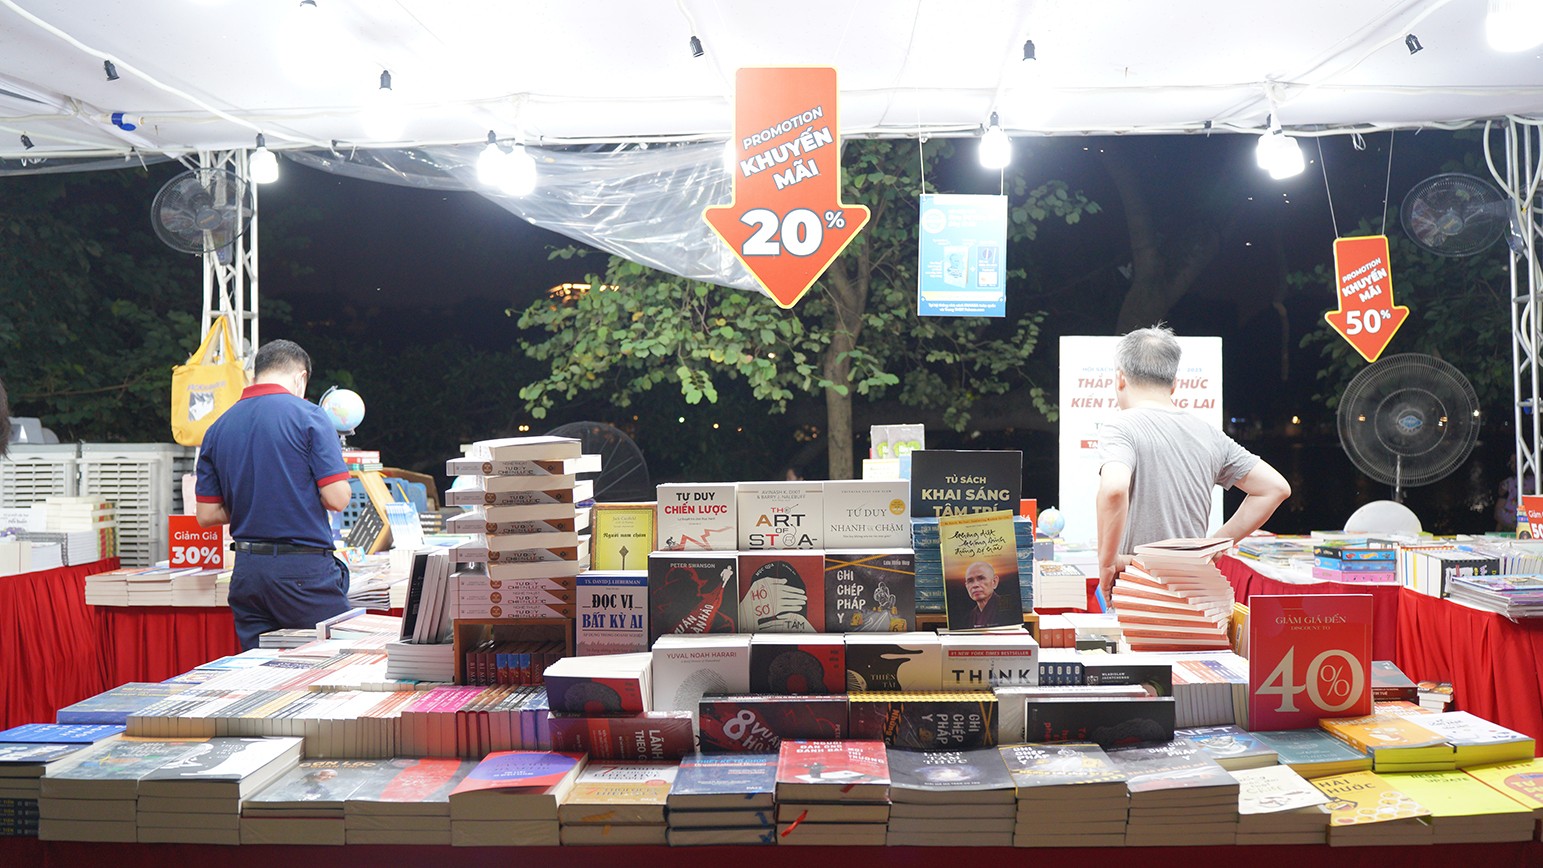 Những hội chợ sách cũng được tổ chức thường xuyên tại Thủ đô với nhiều chương trình ưu đãi, nhằm khuyến khích người dân, đặc biệt là học sinh, sinh viên đọc sách